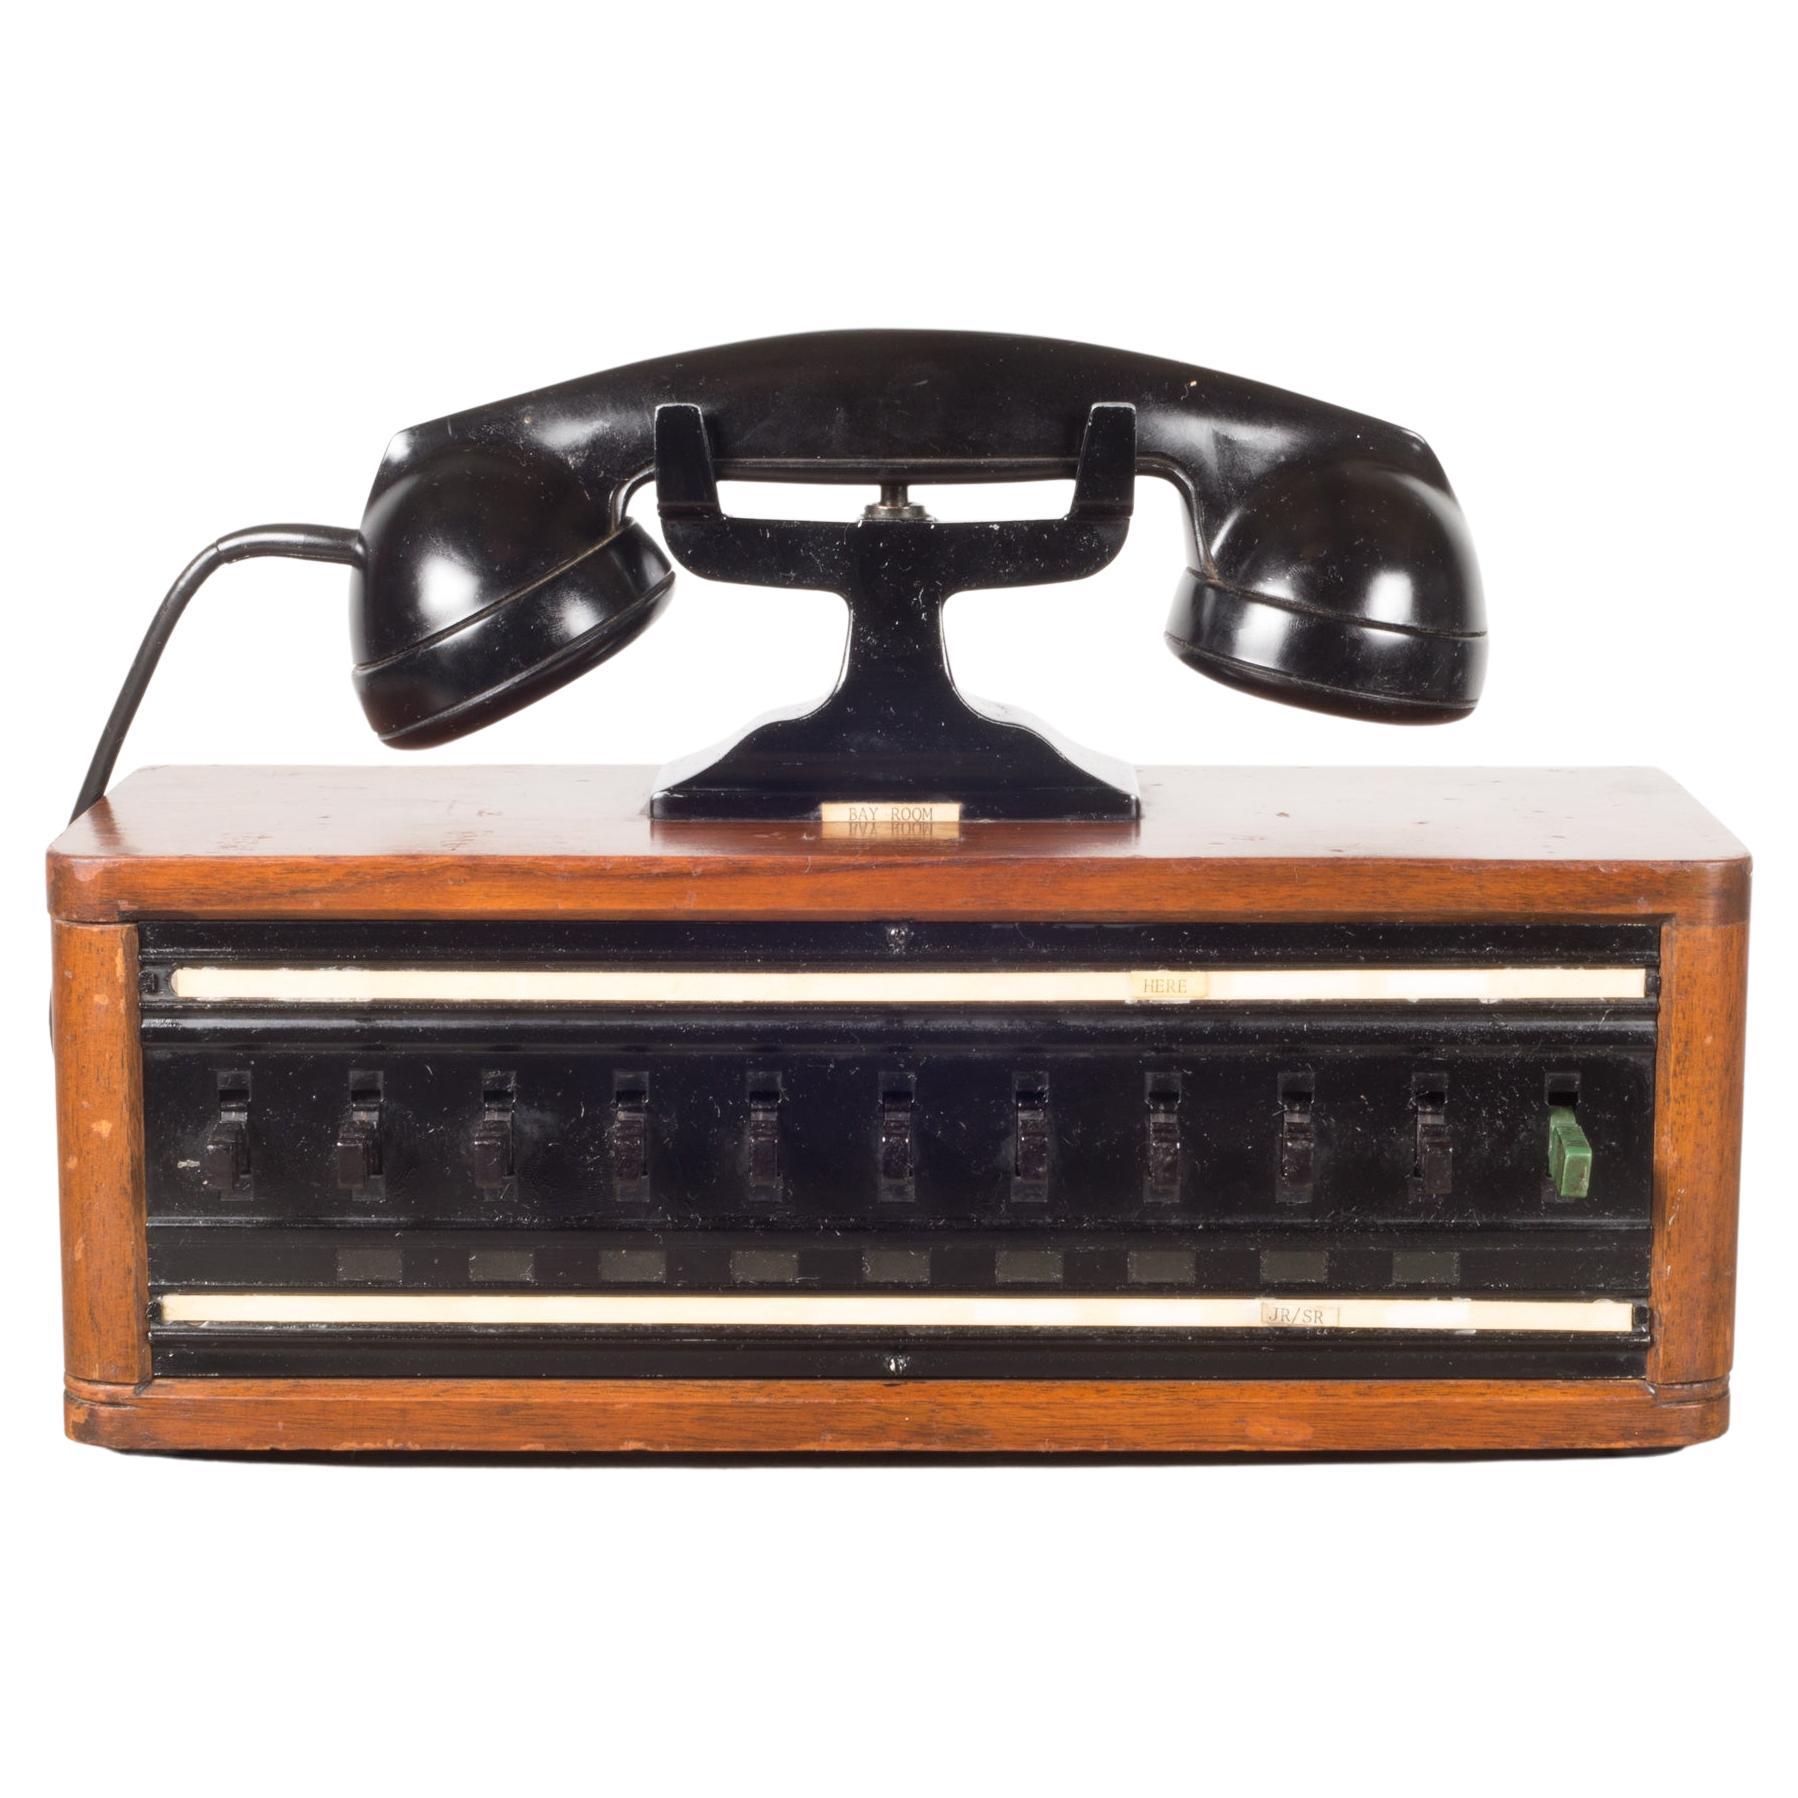 Antique World War ll Era US Navy Bakelite Switch Board Phone, c.1940